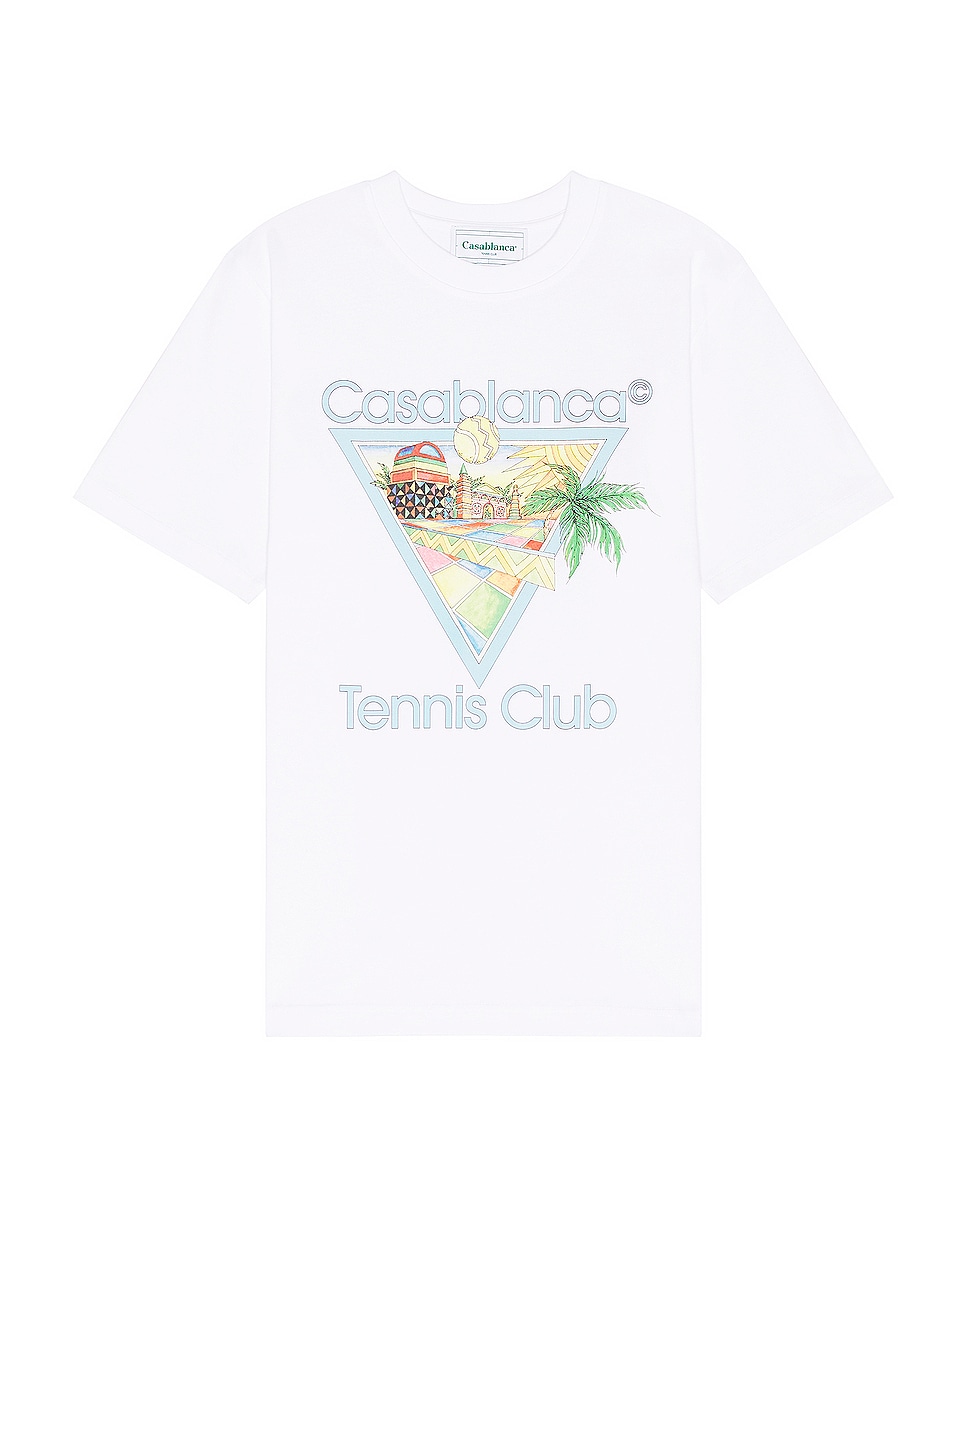 Image 1 of Casablanca Afro Cubism Tennis Club Printed T-shirt in Afro Cubism Tennis Club